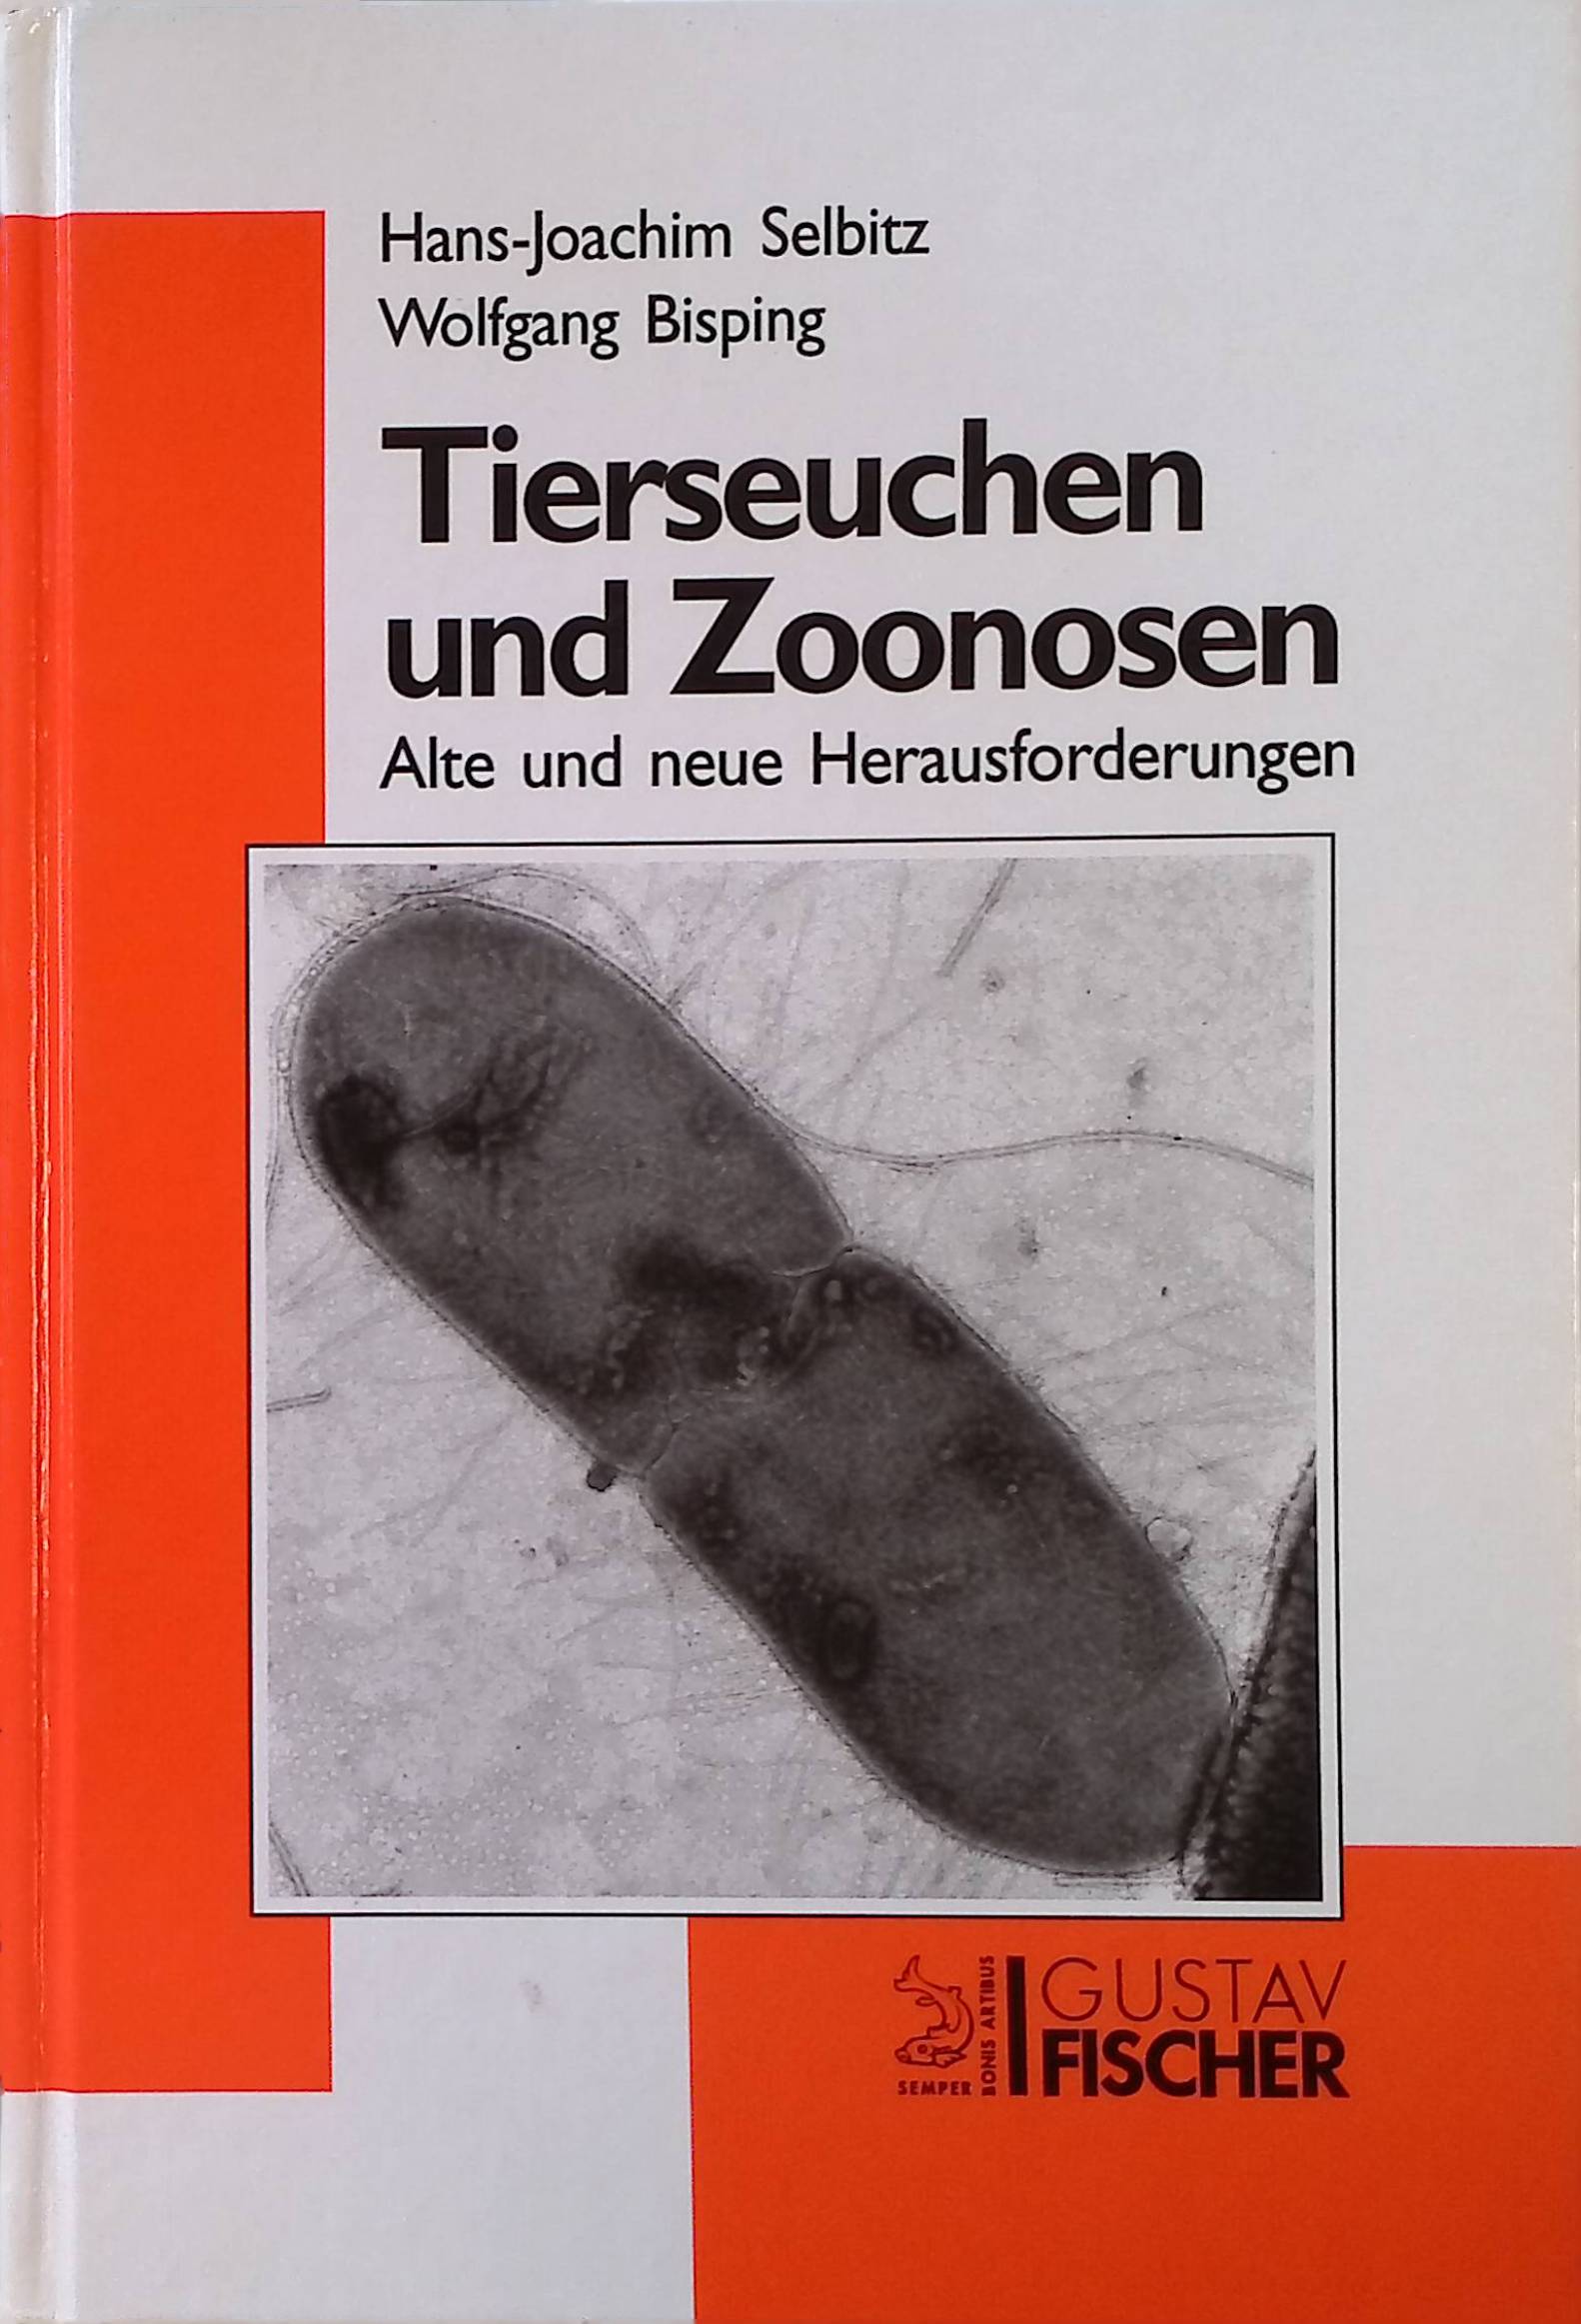 Tierseuchen und Zoonosen : alte und neue Herausforderungen. - Selbitz, Hans-Joachim und Wolfgang Bisping